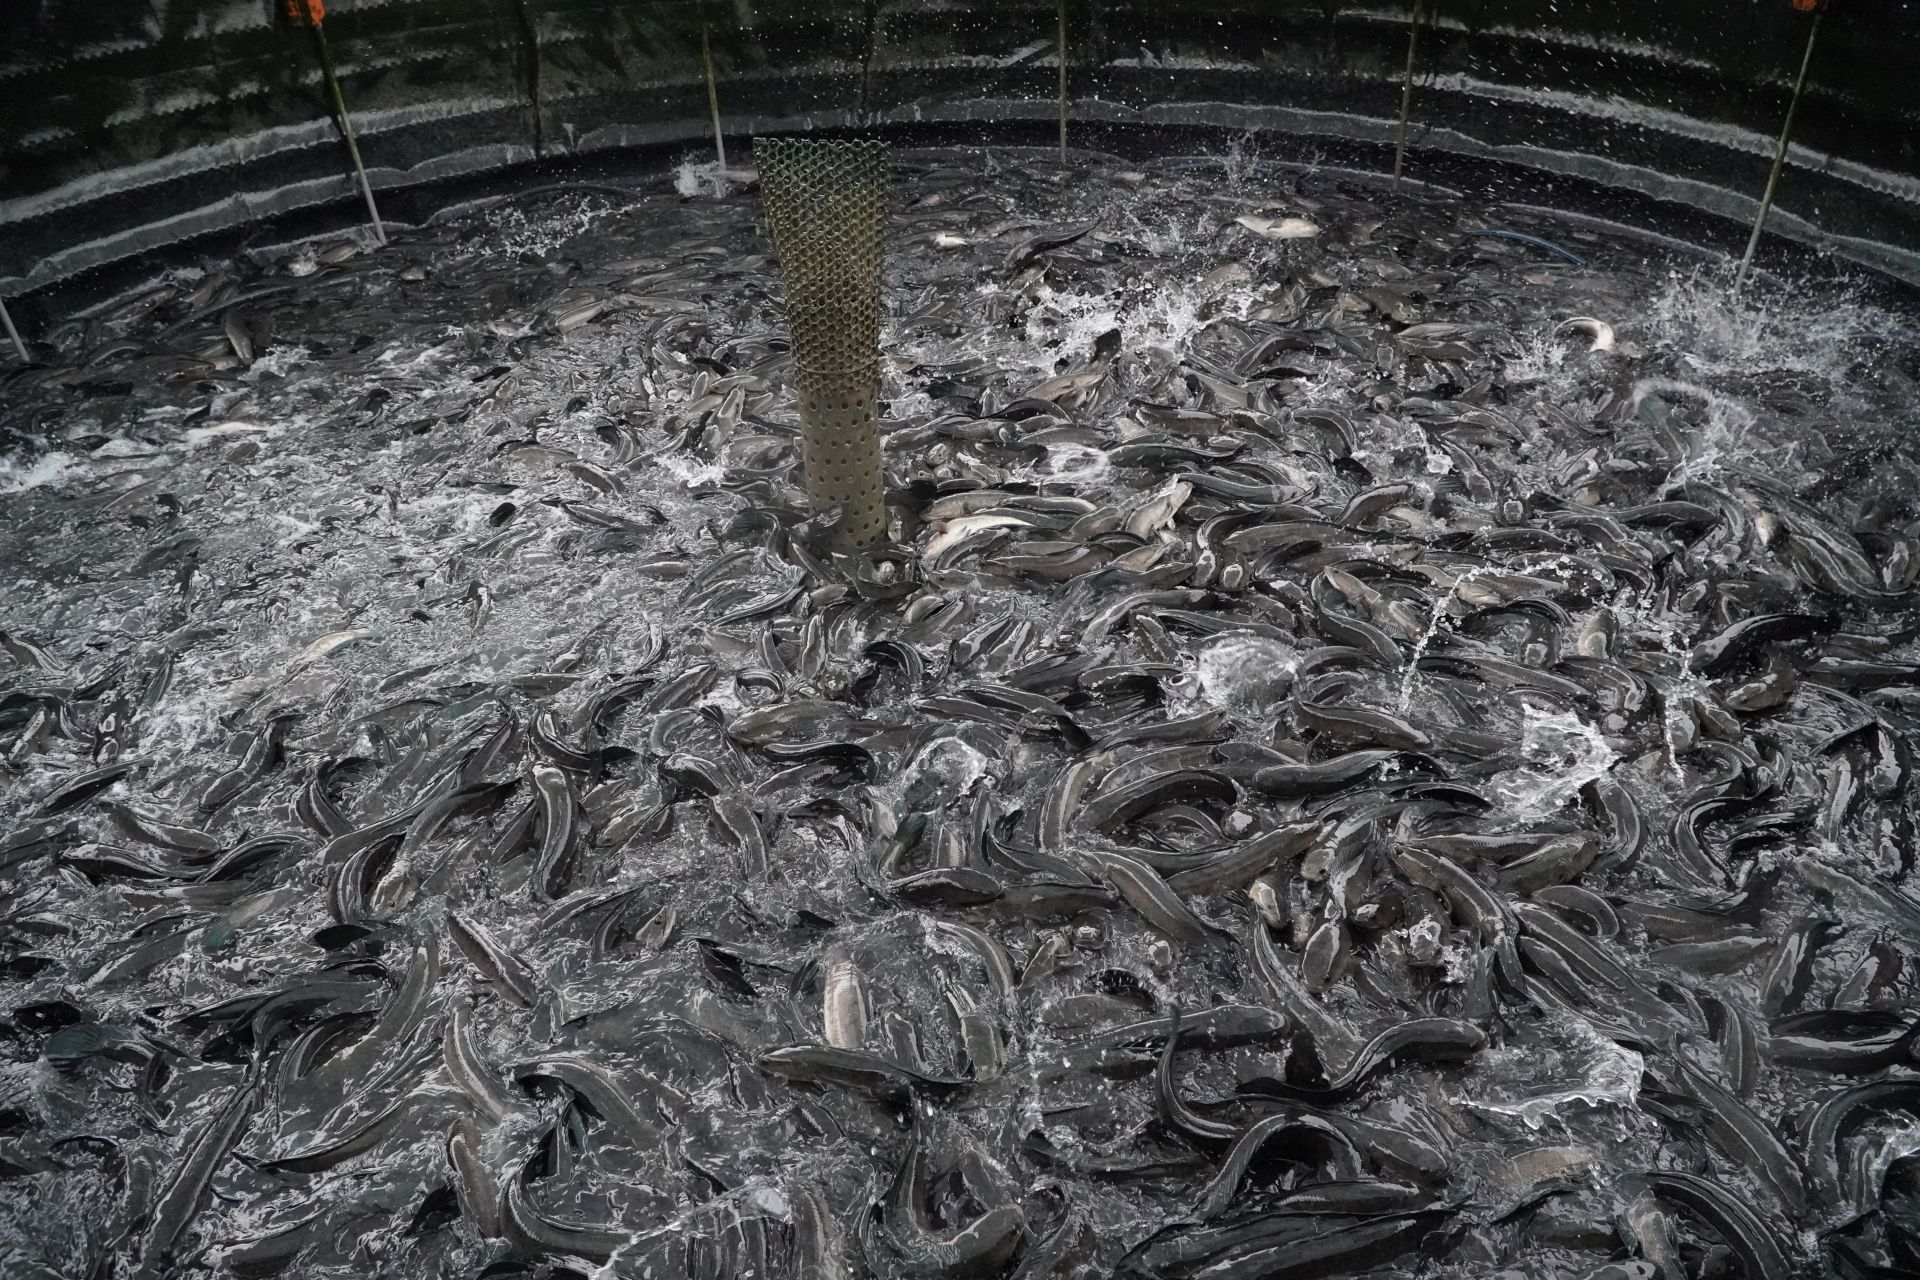 Nuôi cá lóc dày đặc trong bể lót bạt trên vườn ở Tây Ninh, tháo nước cá lộ ra một đống, cả làng xuýt xoa - Ảnh 3.